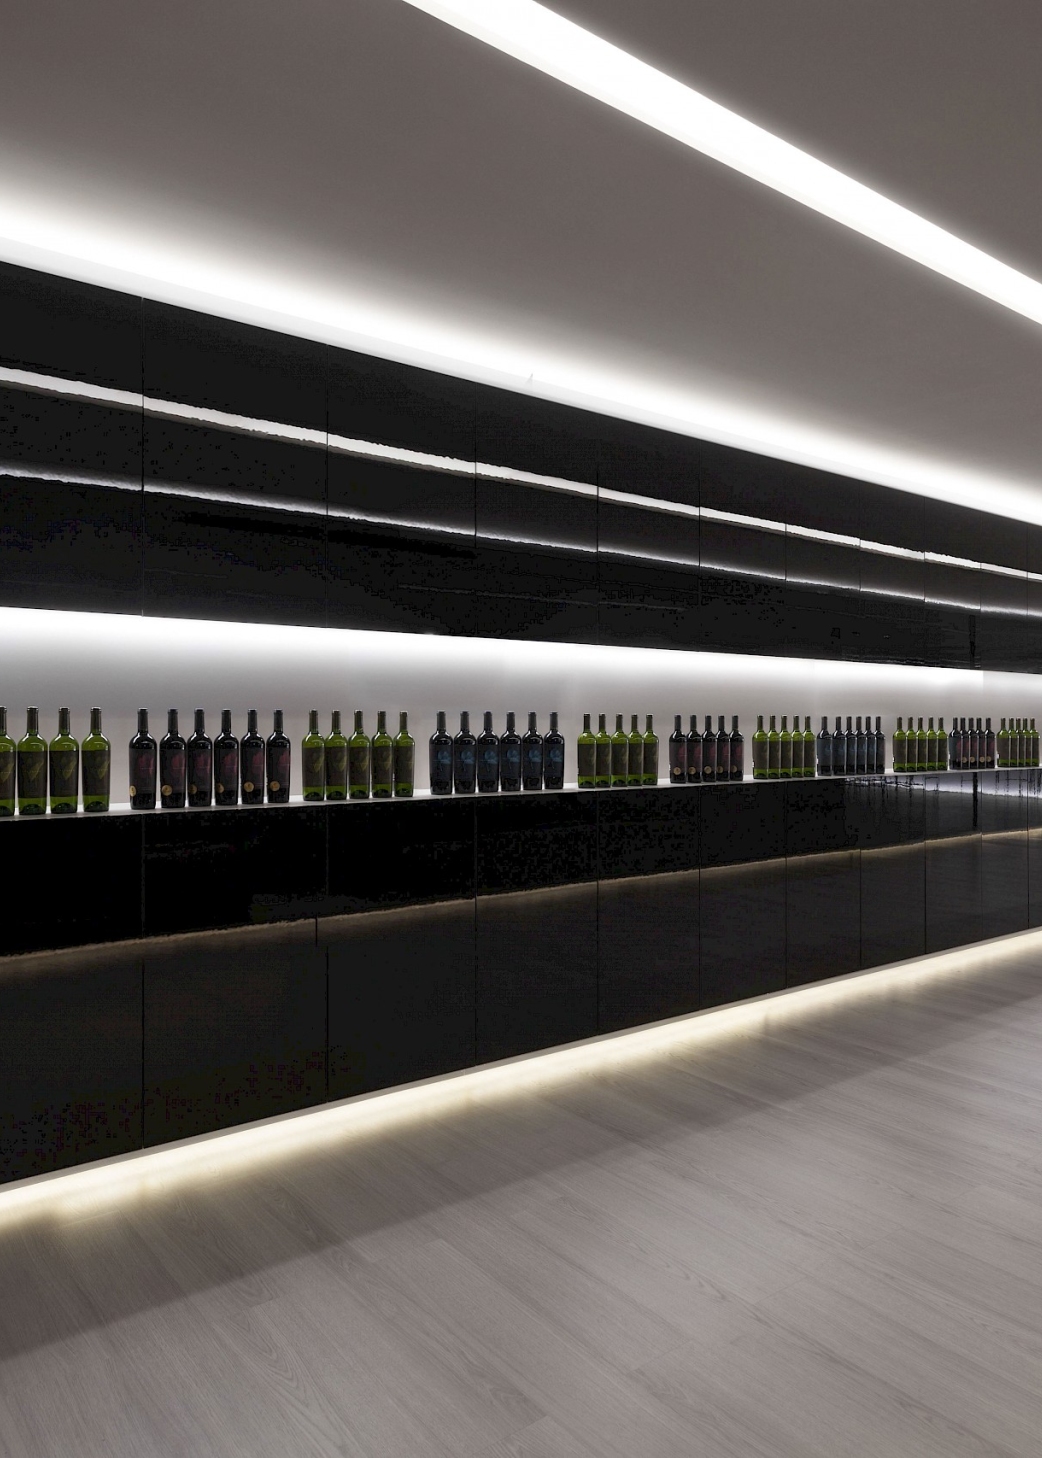 Vinos nobles puestos en escena como obras de arte – el concepto de la Vegamar Wine Shop en Valencia